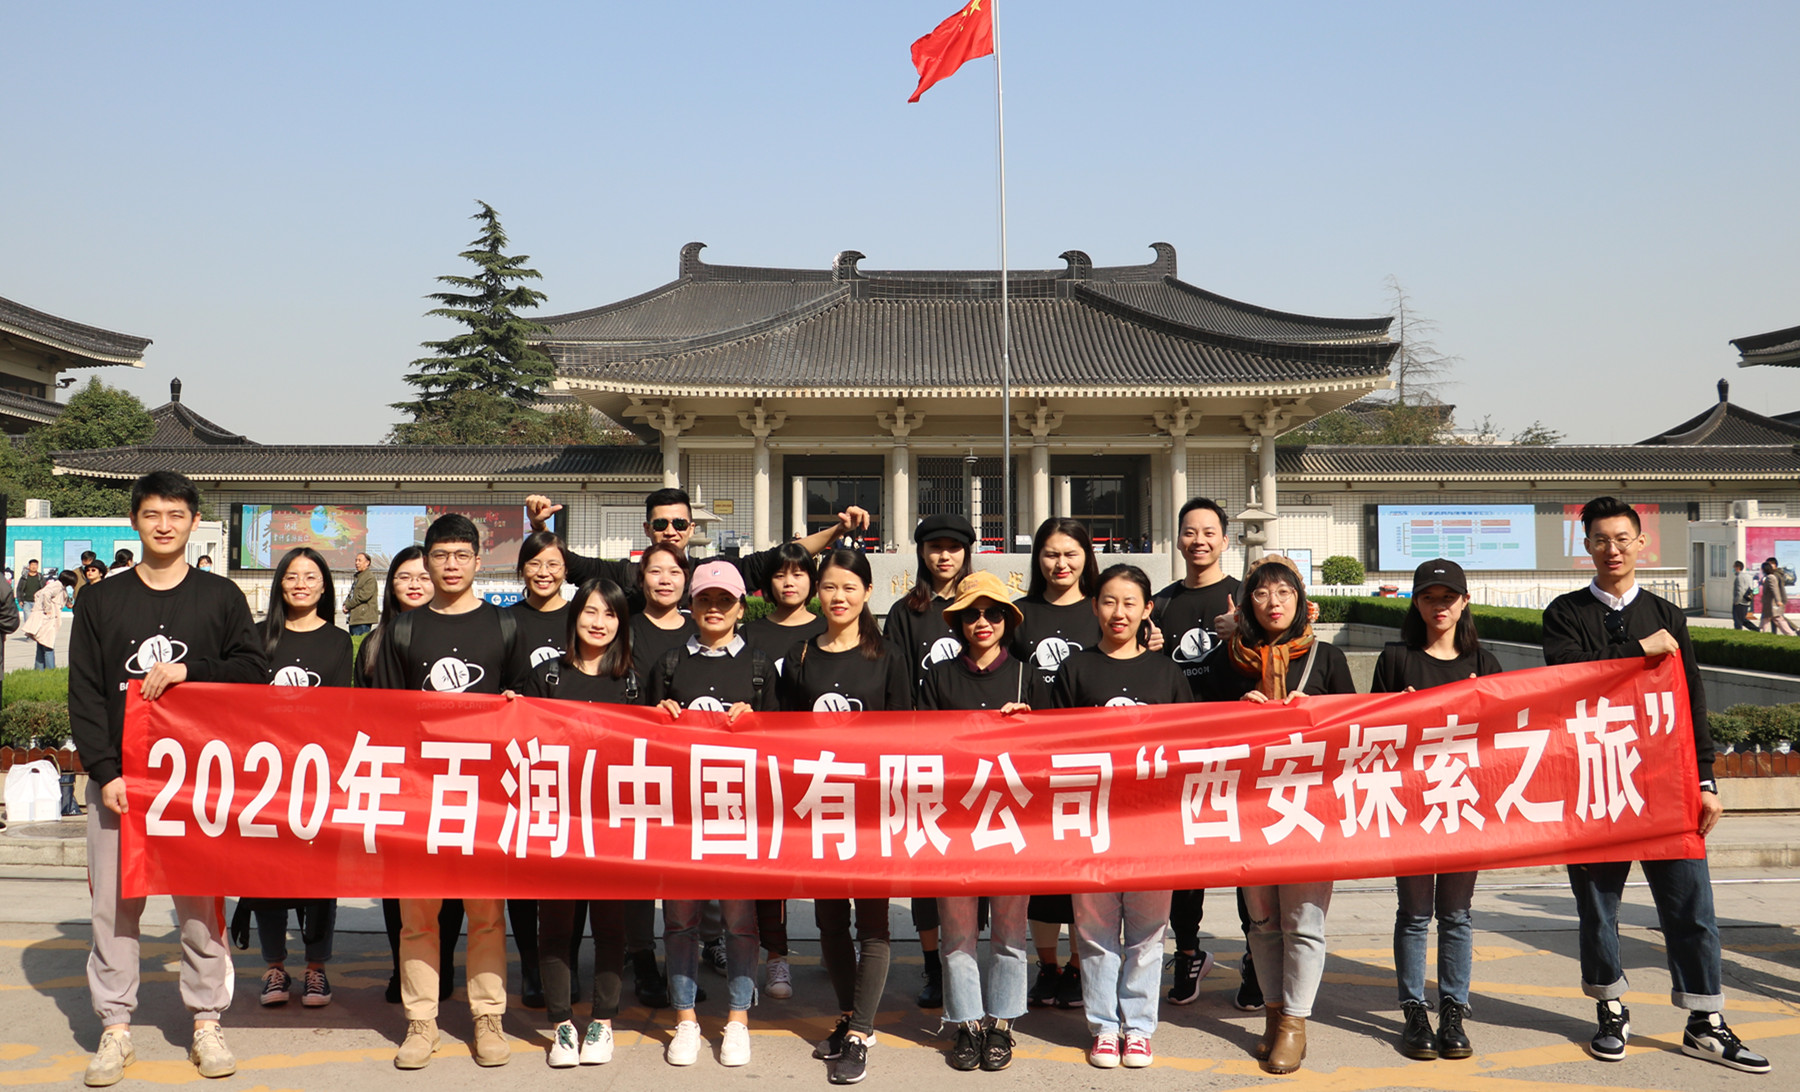 Terracotta Army Venture- Meravellós viatge de formació d'equips de Baron a Xi'an